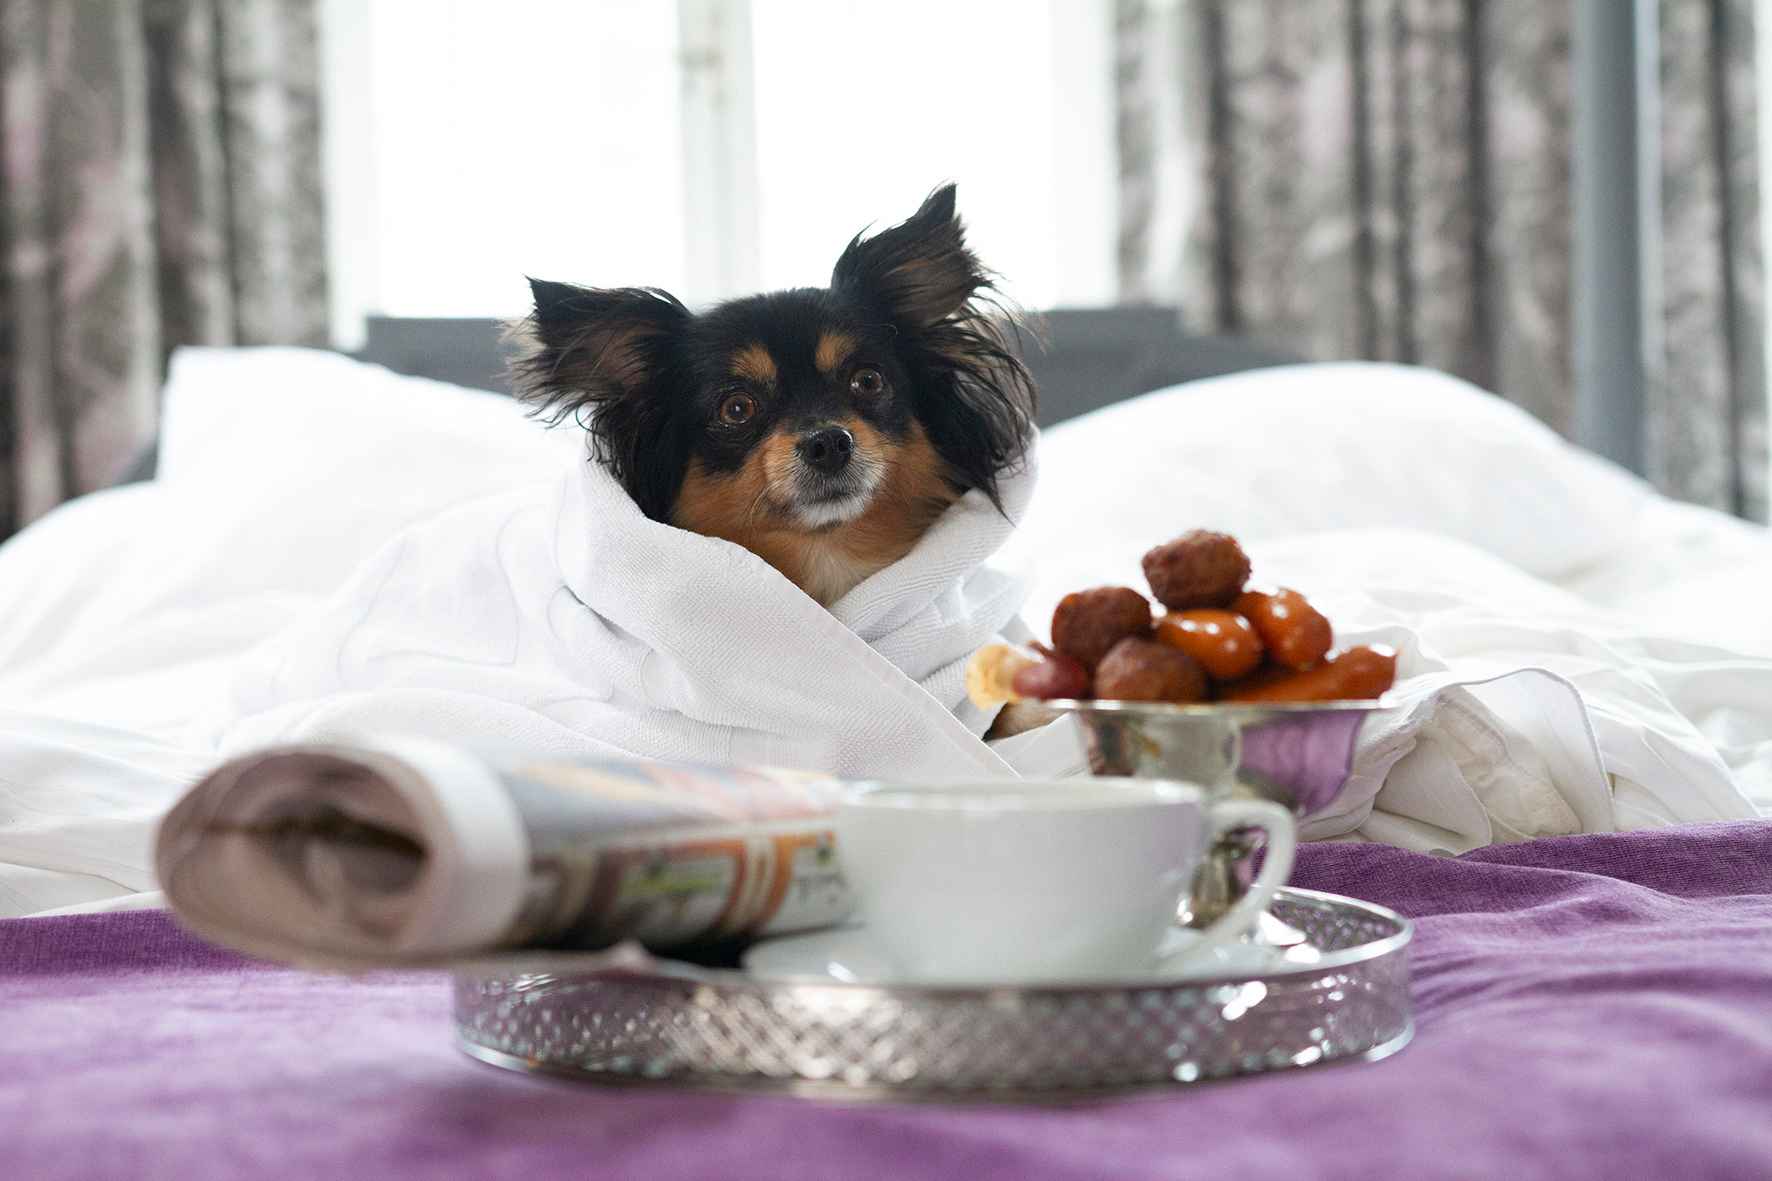 Ein kleiner Hund sitzt bequem in Bettwäsche eingewickelt auf einem Hotelbett. Vor dem Hund stehen eine Schüssel mit Würstchen und ein Tablett mit einer Kaffeetasse und einer Zeitung.